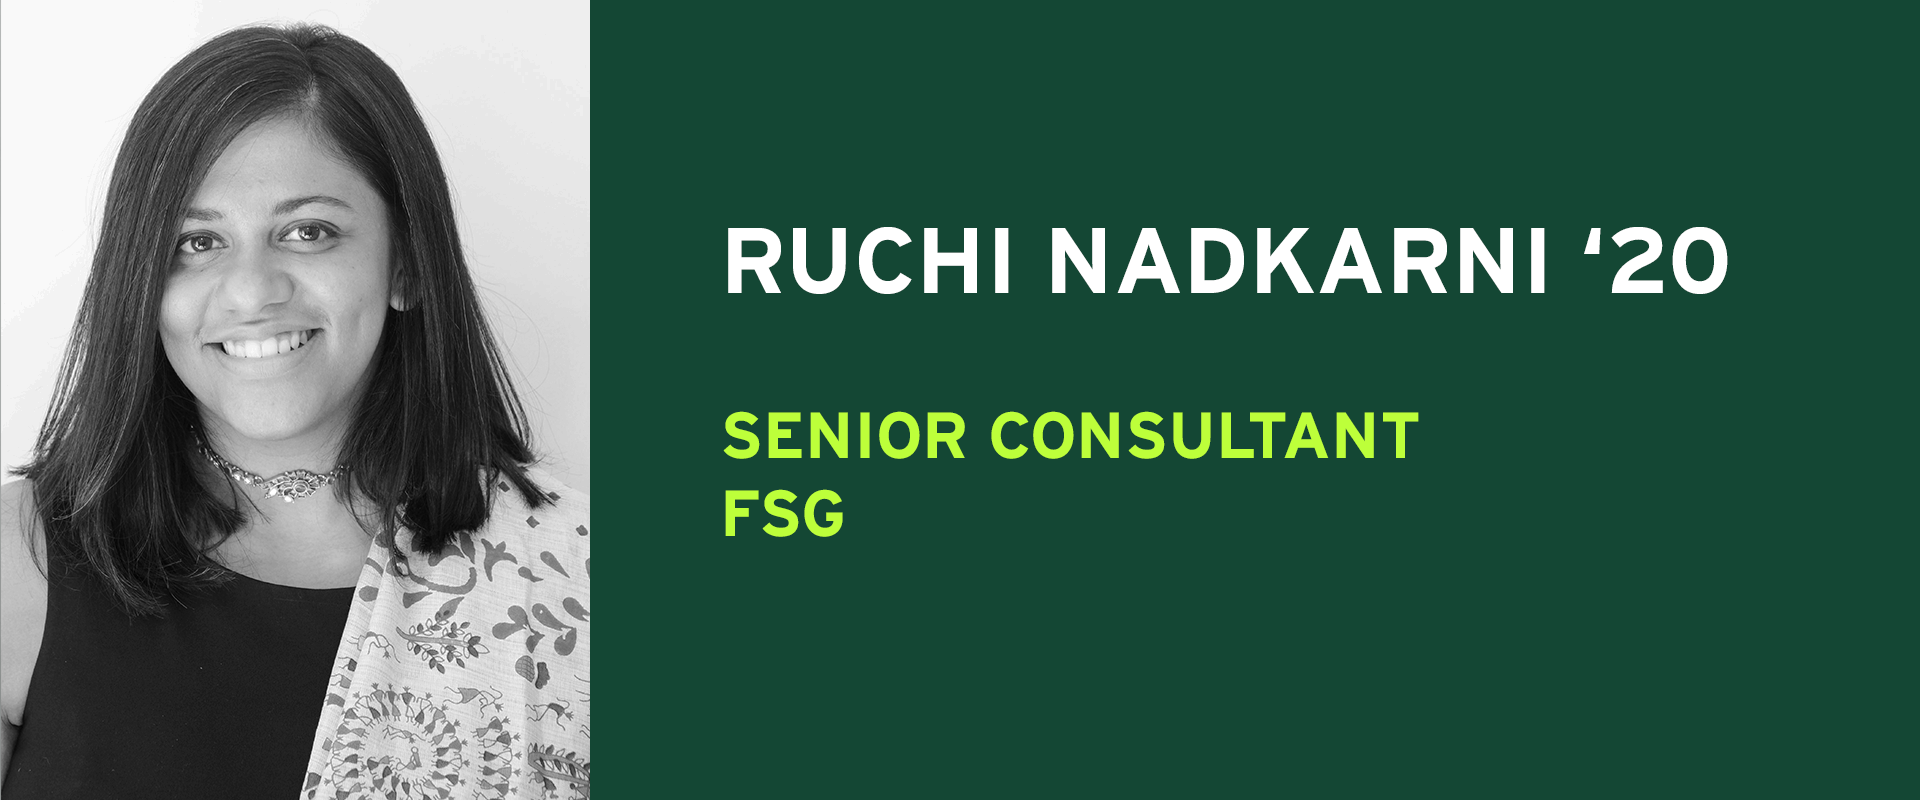 Ruchi Nadkarni Senior Consultant FSG